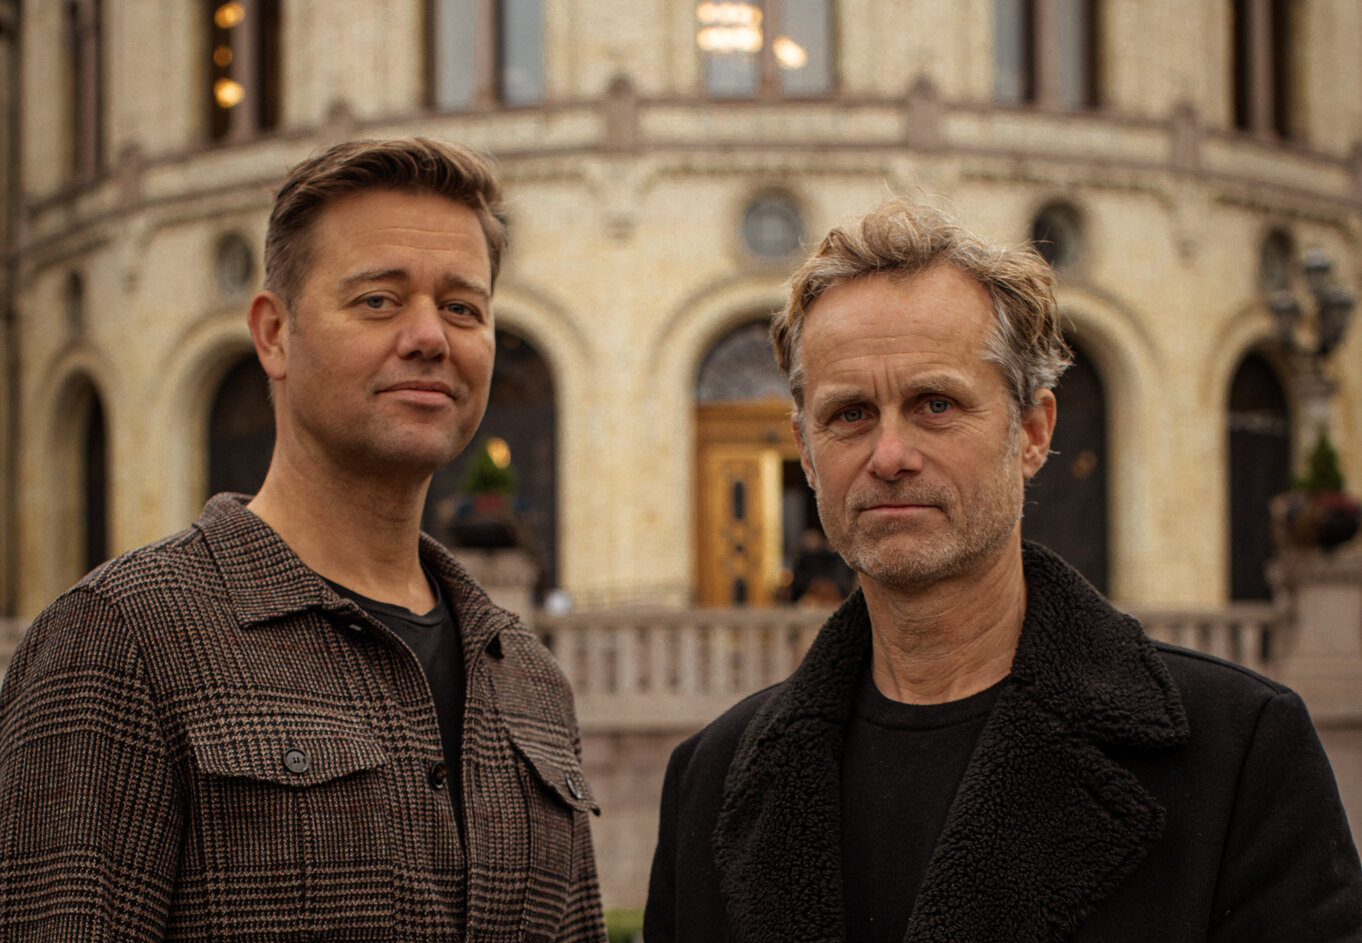 Johan Høst’s hit novel ‘En nasjon i sjakk’ will be adapted into a film – The Nation’s Gambit